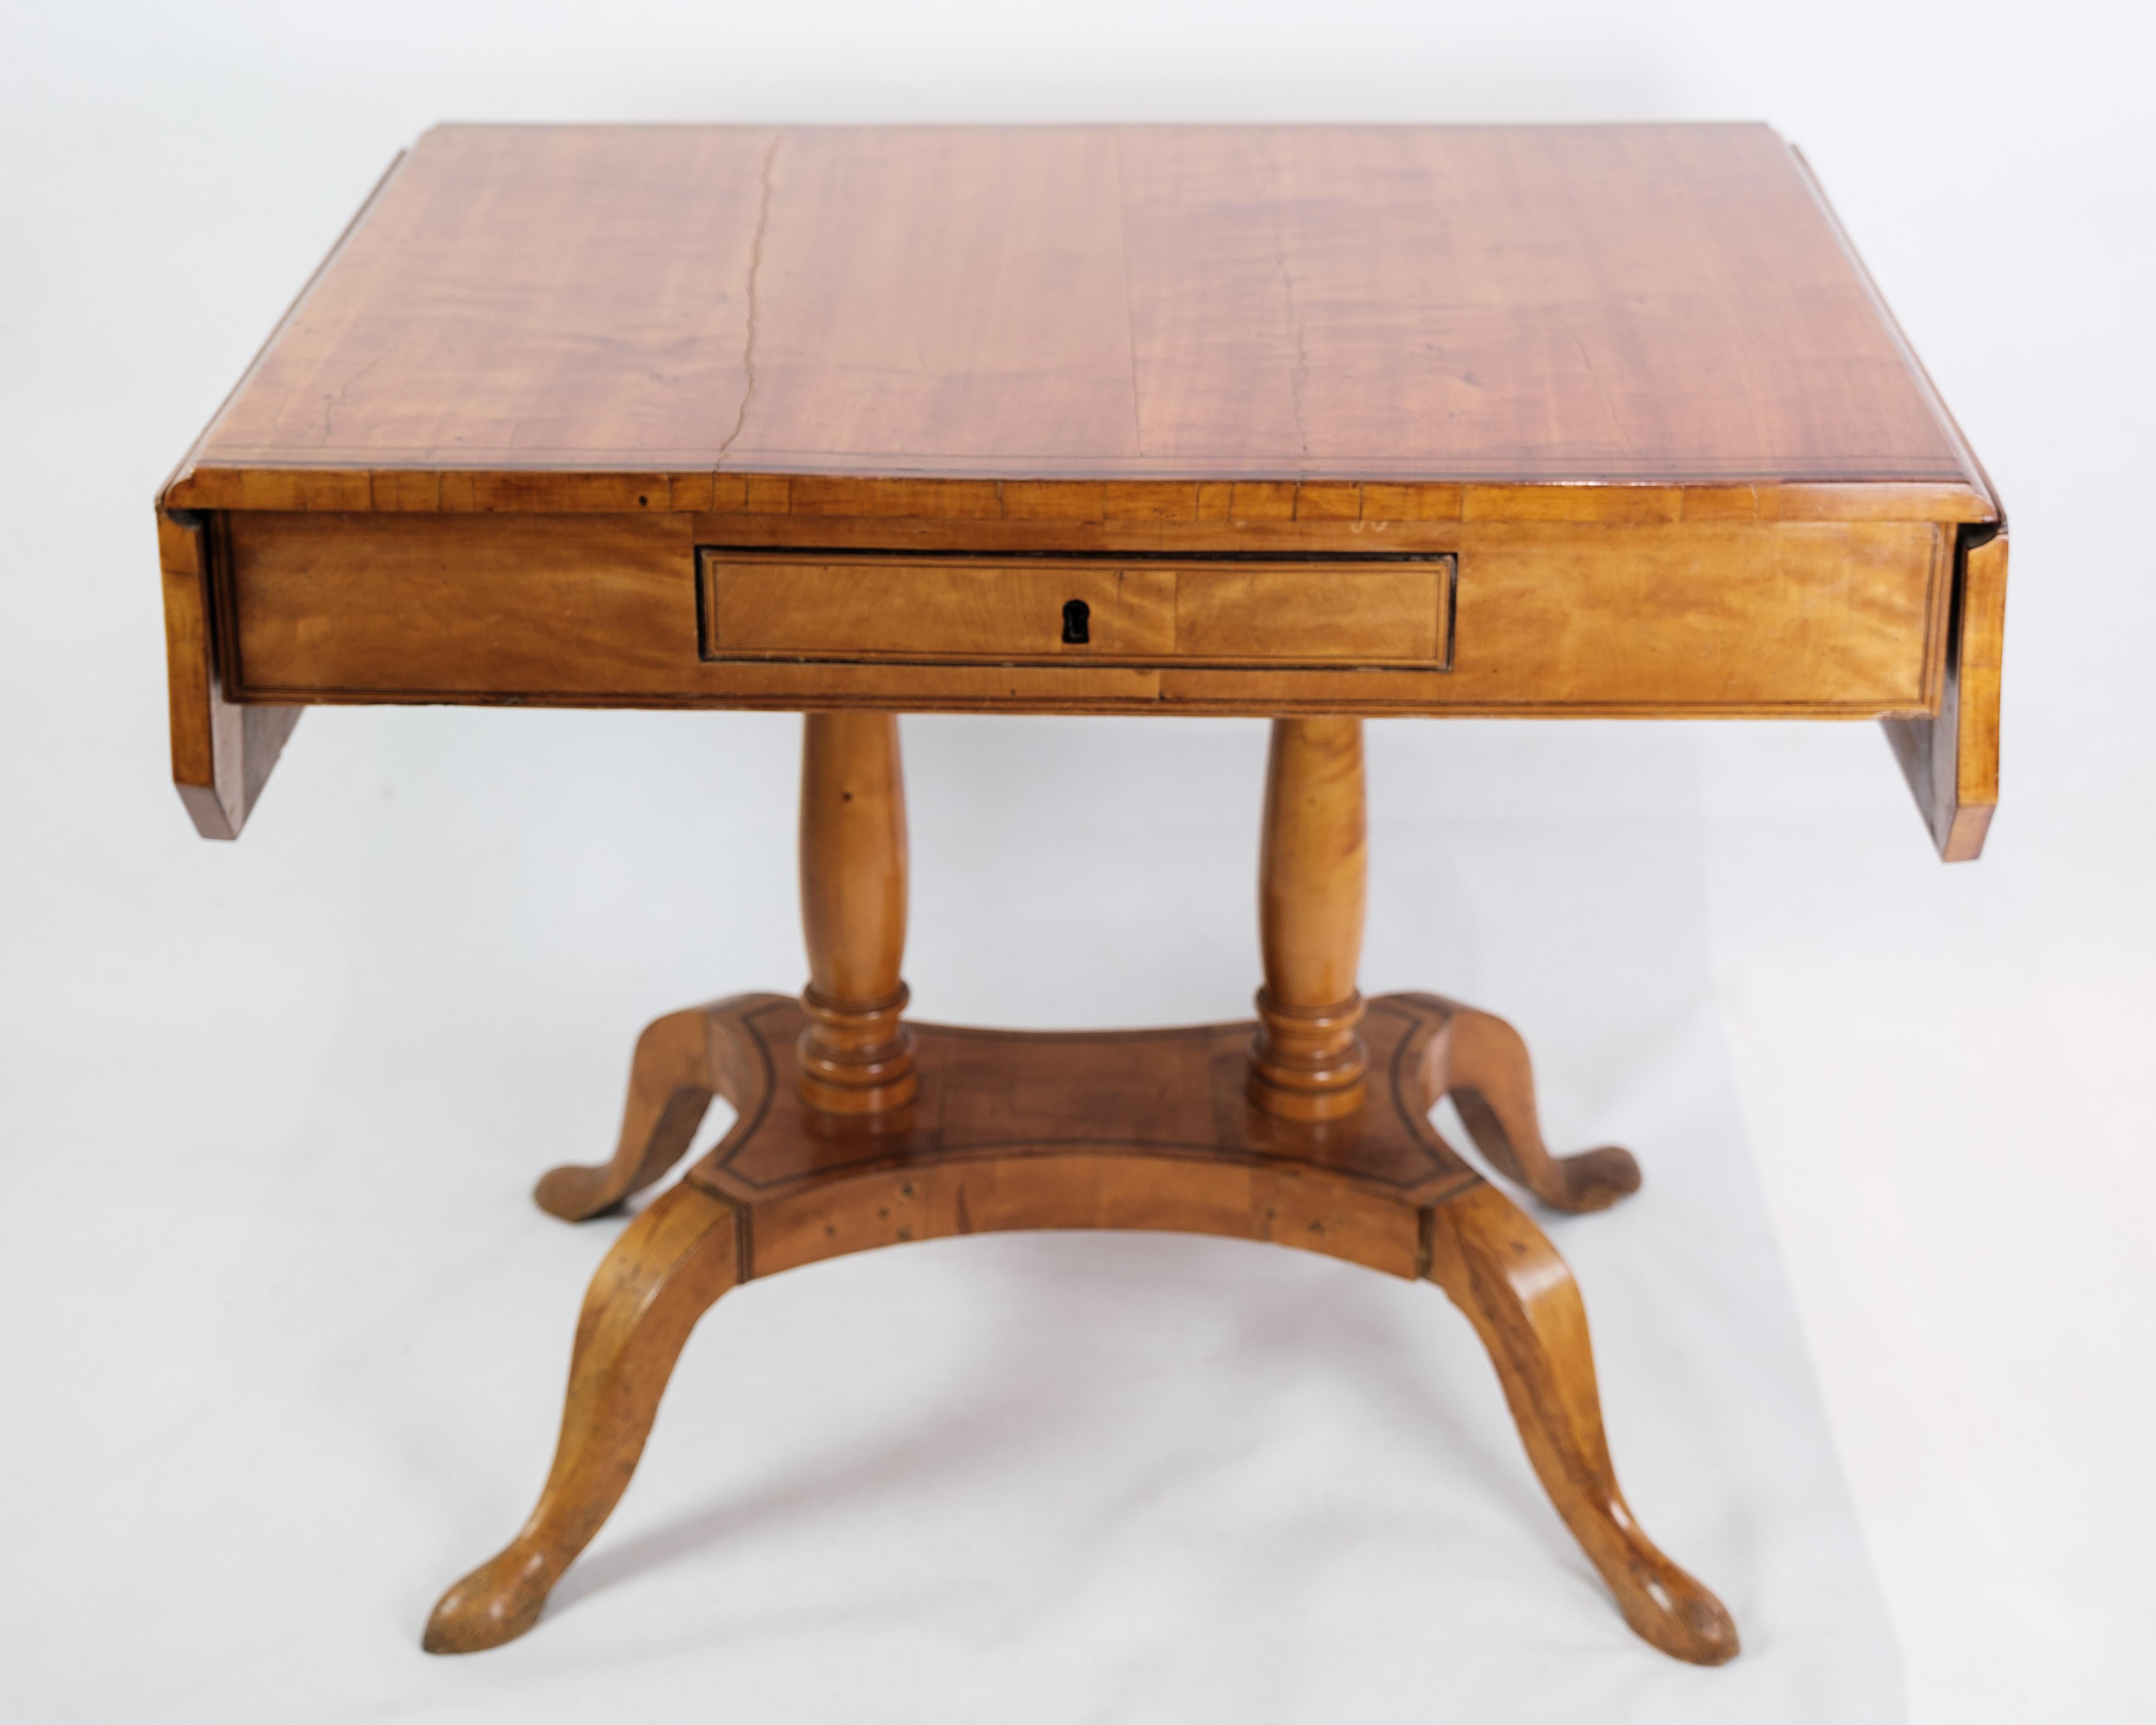 La table de salle à manger Empire, une pièce ancienne ornée d'un travail d'intarsia complexe, fabriquée en bois de bouleau et originaire du Danemark en 1840, est un témoignage remarquable du savoir-faire et de la grandeur de l'ère